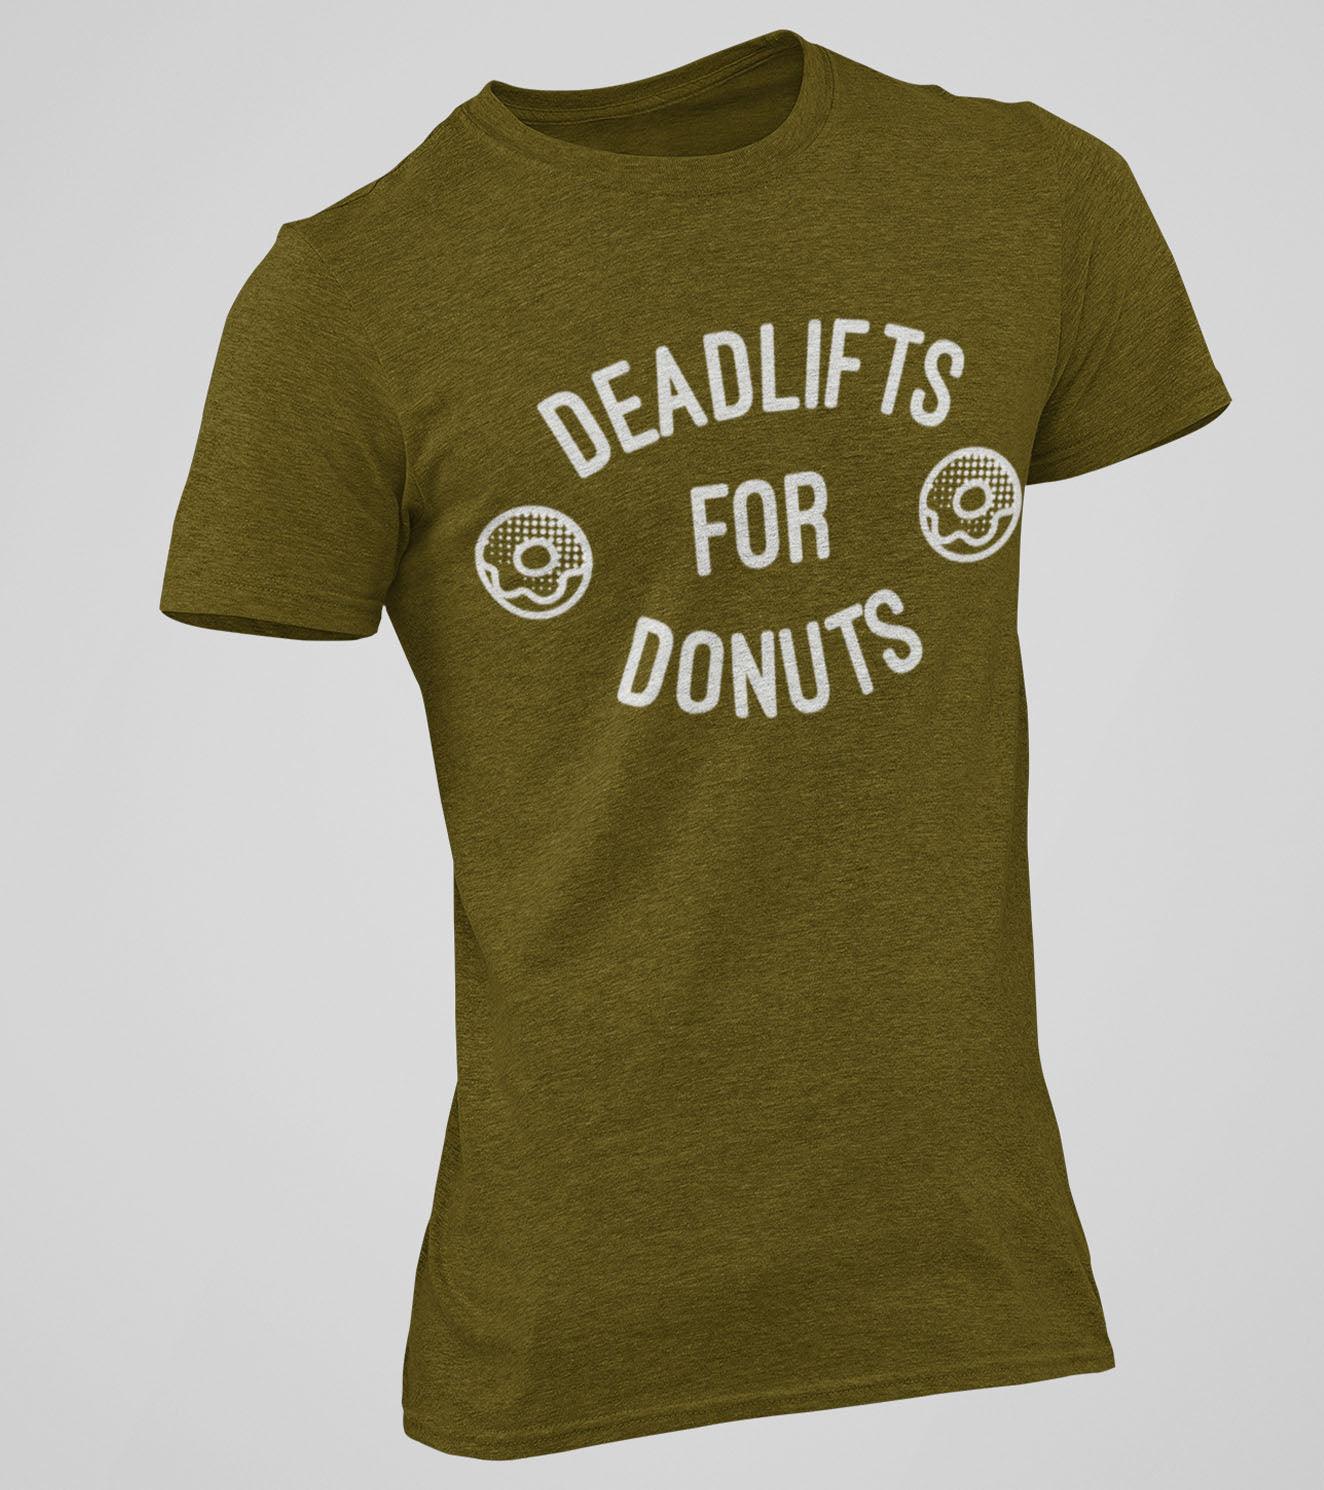 Men's "Deadlift & Donut" T-Shirt (Olive) - wodarmour